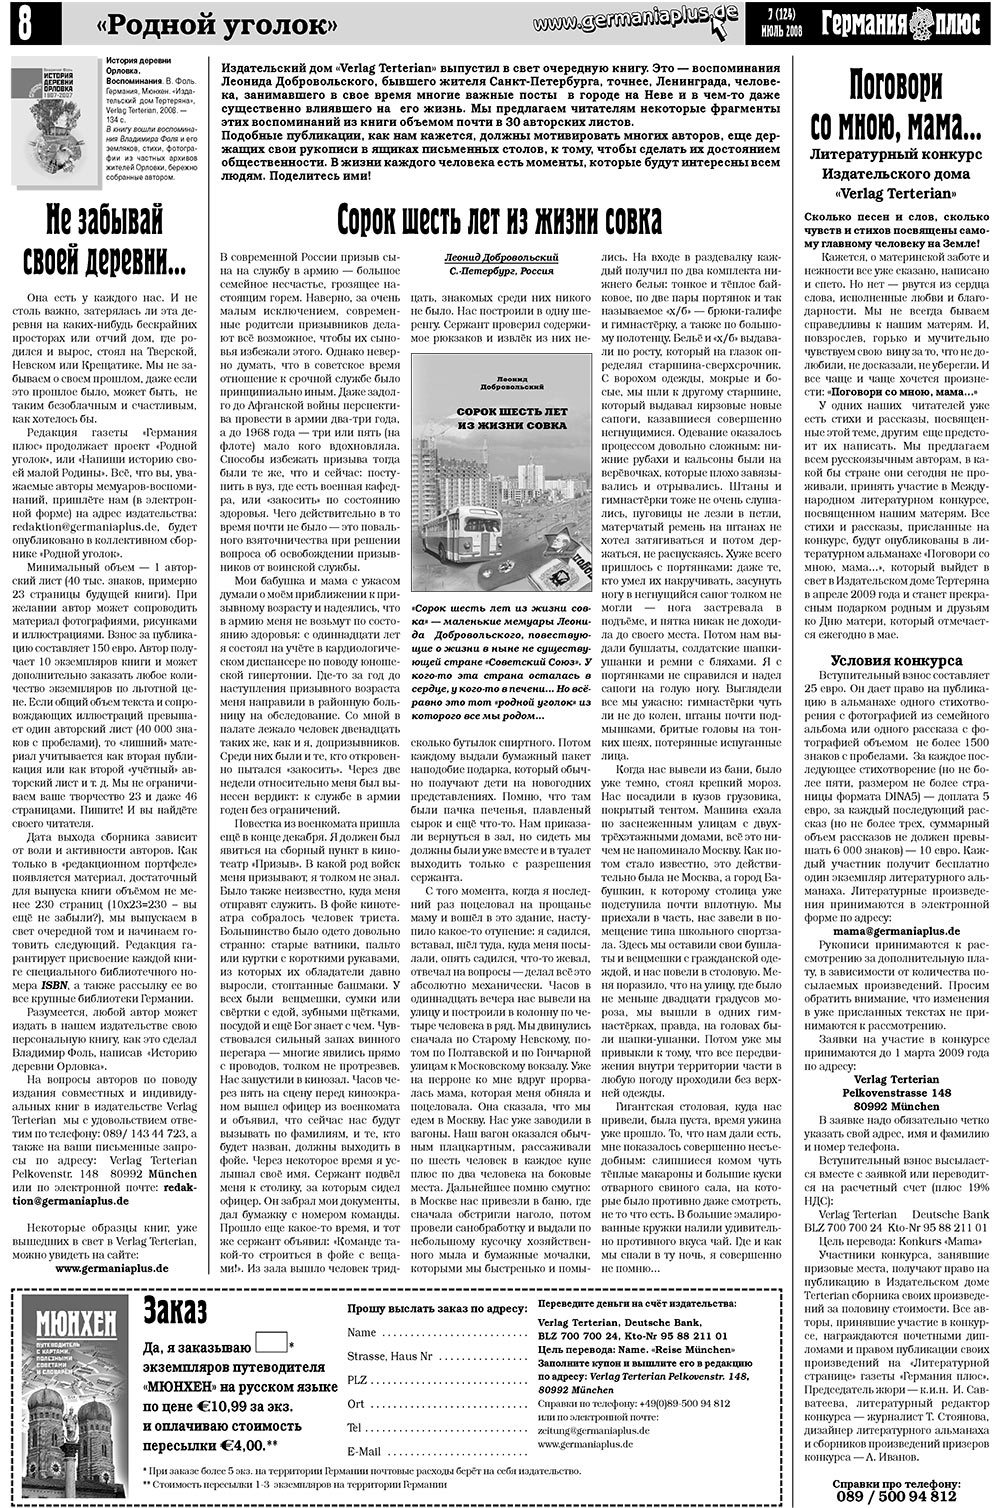 Германия плюс (газета). 2008 год, номер 7, стр. 10